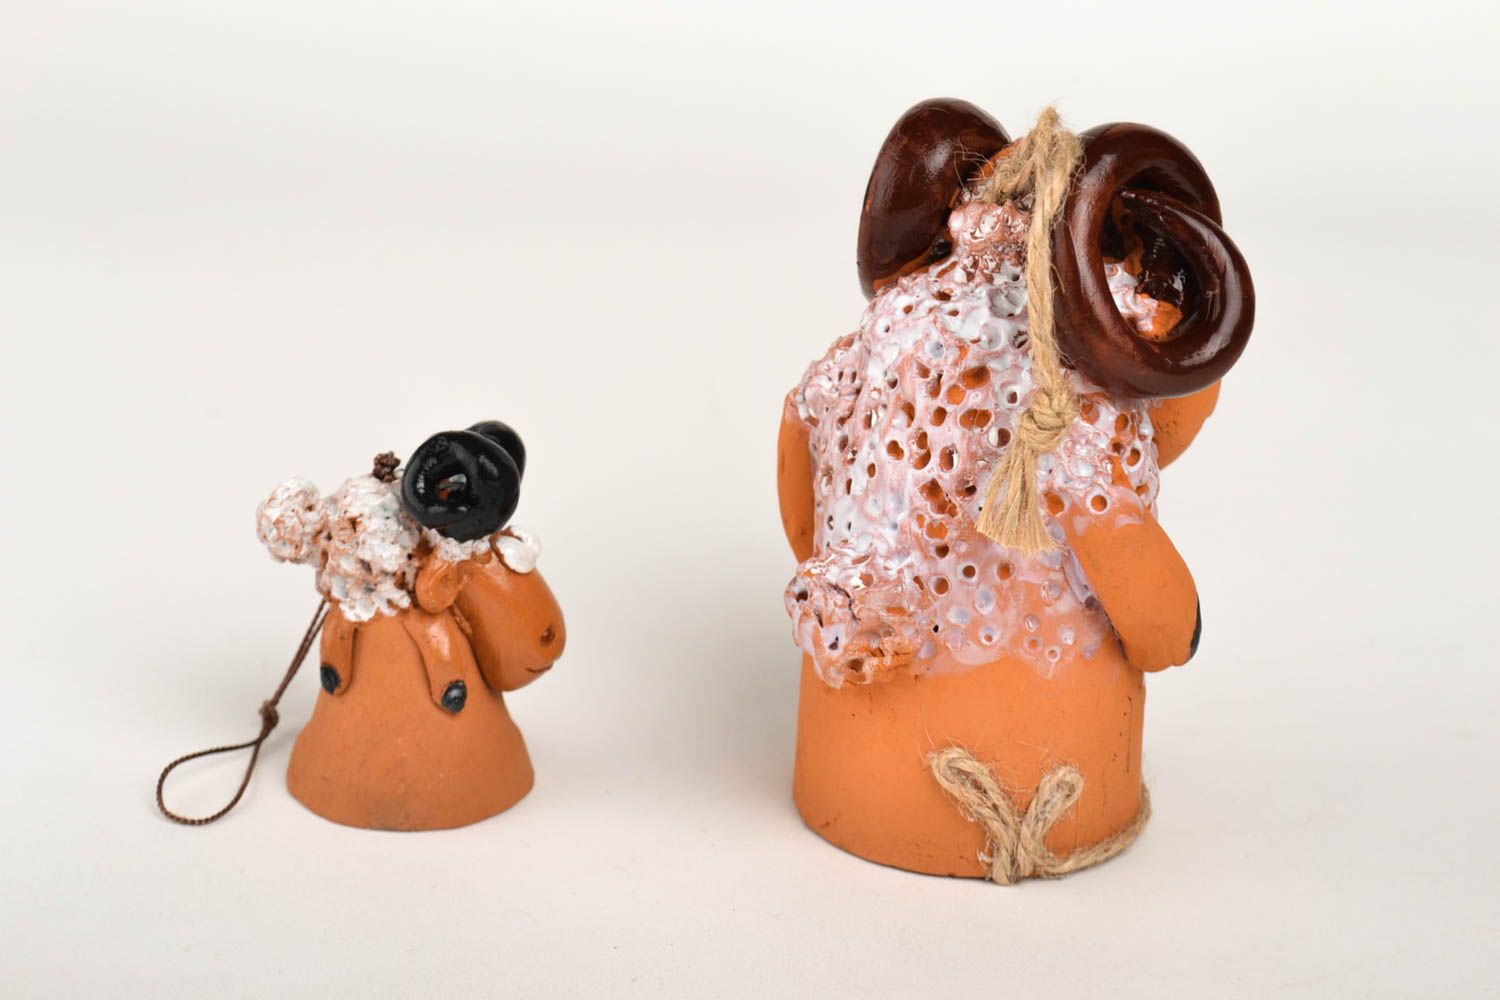 Handmade ceramic bells 2 designer clay souvenirs interior decor ideas photo 5